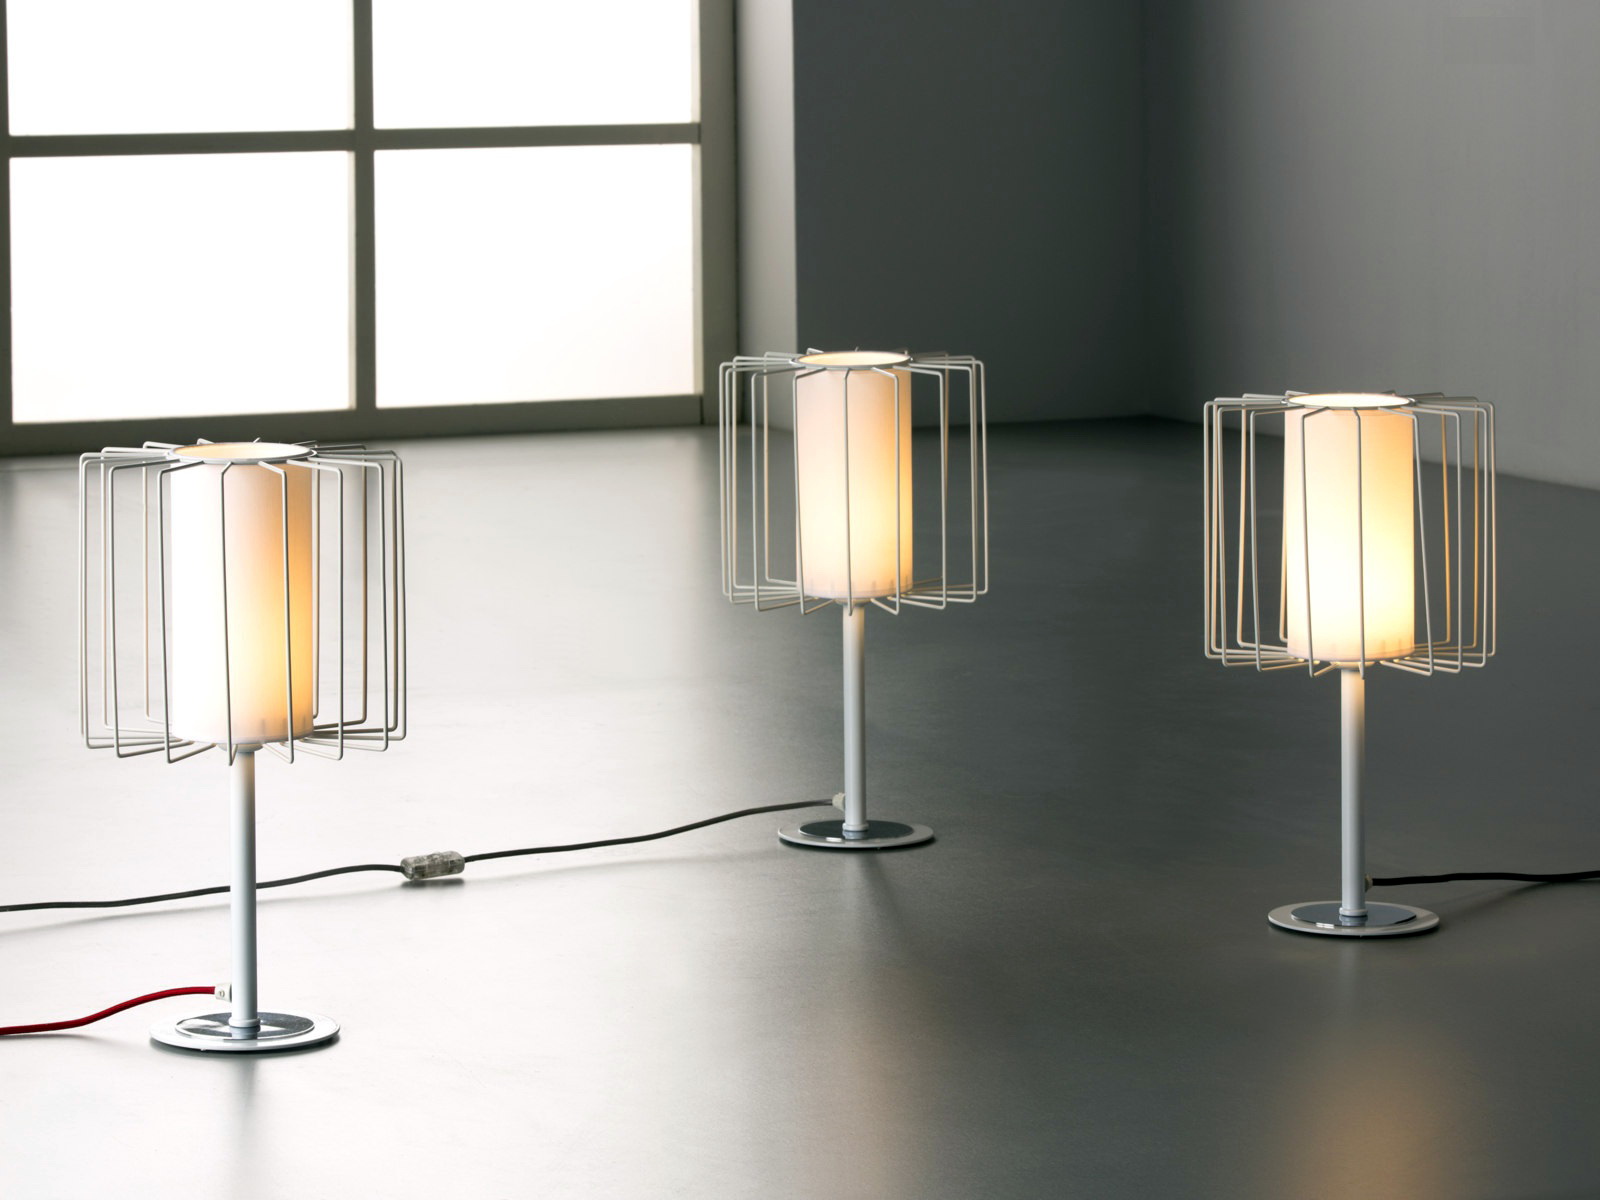 Lámparas mesita modernas 5445 by Ilusoria Lamps en muebles antoñán® León